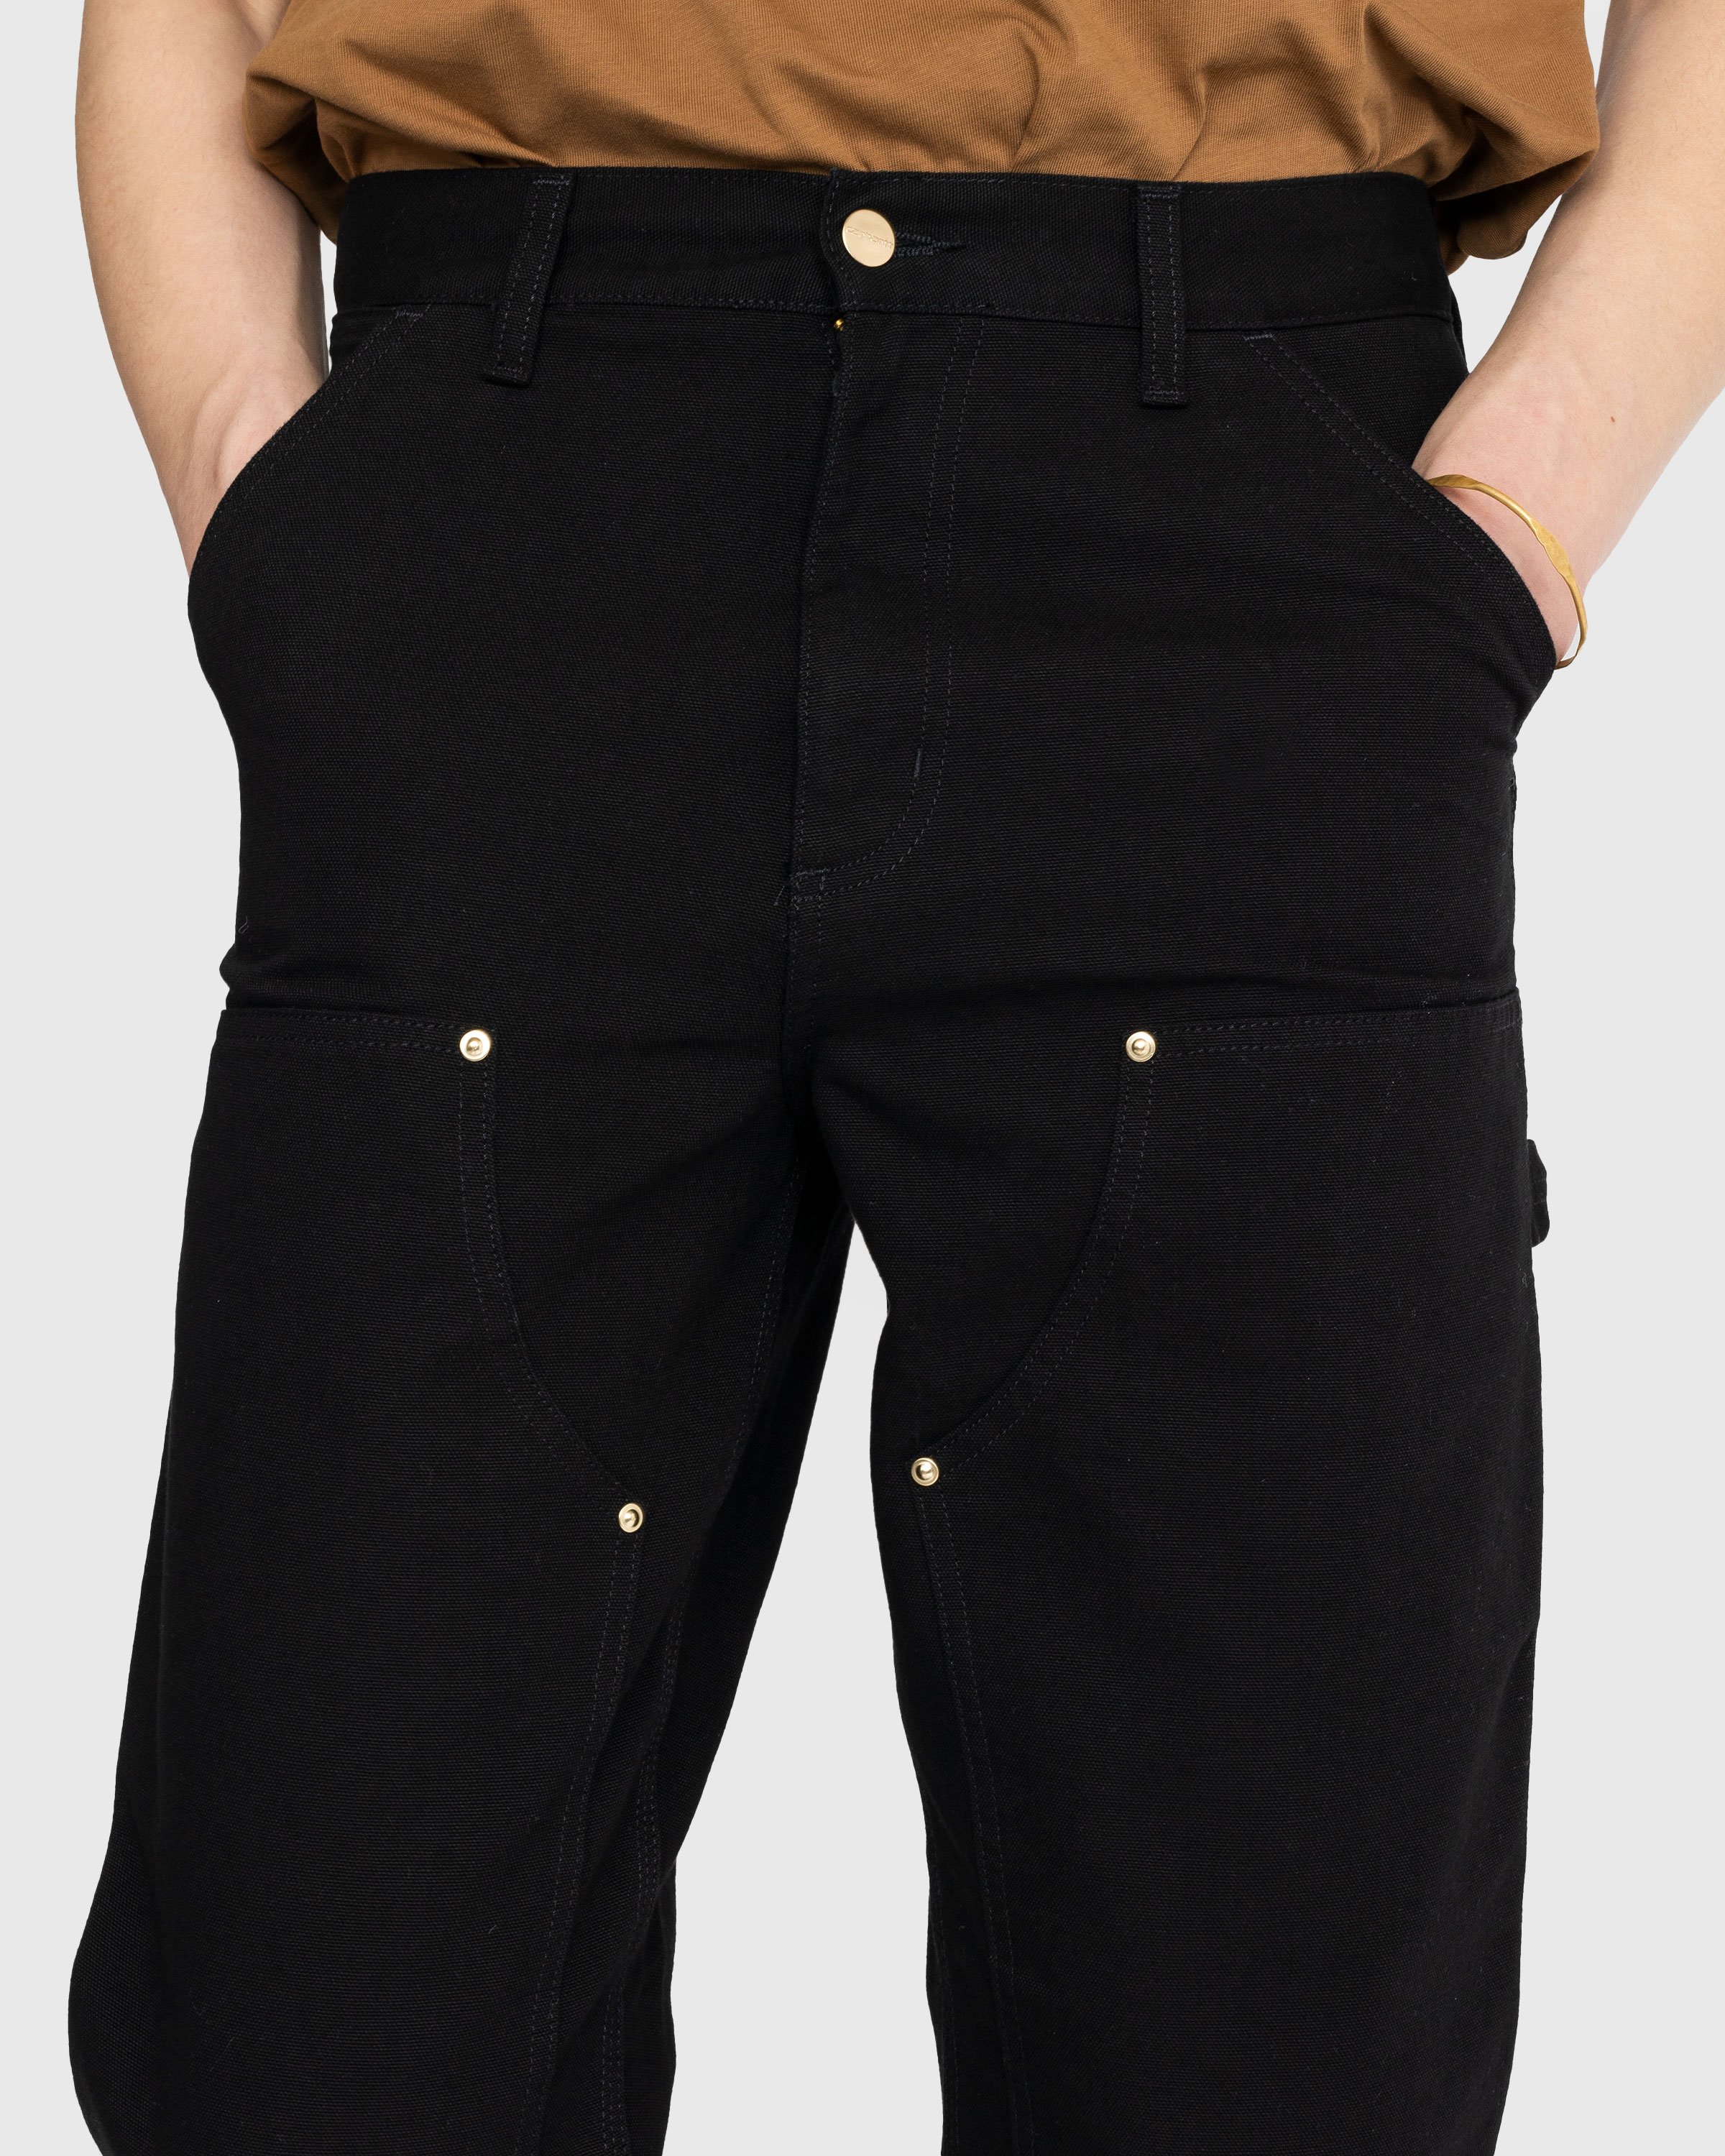 Carhartt WIP - Double Knee Pant Black Rinsed - Clothing - Black - Image 4